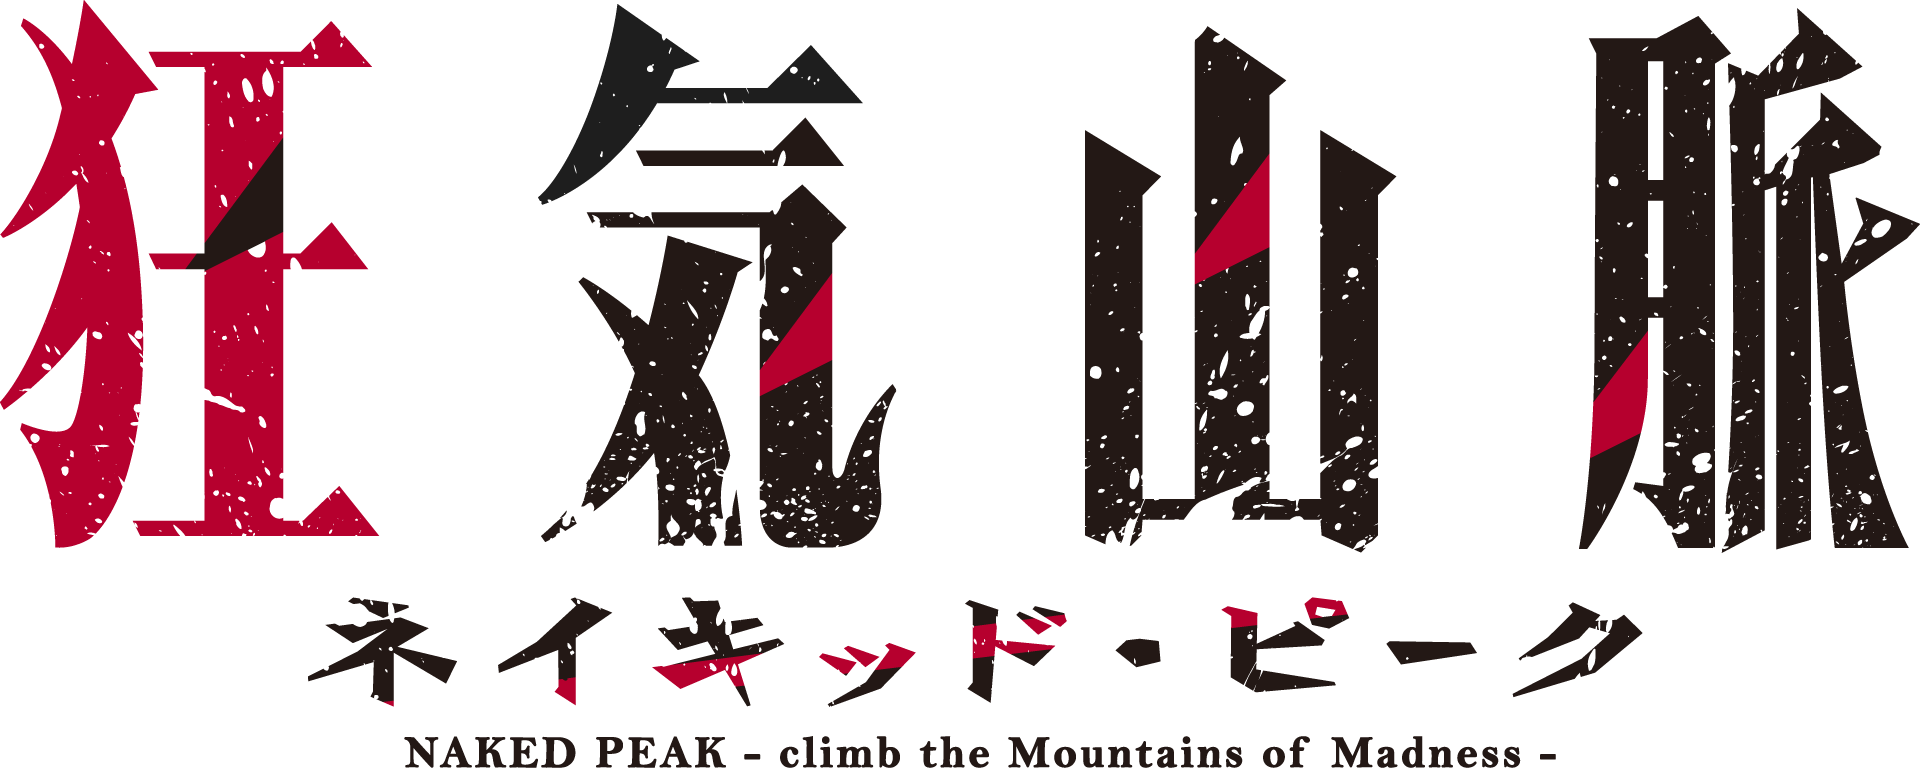 Naked peak logo.png